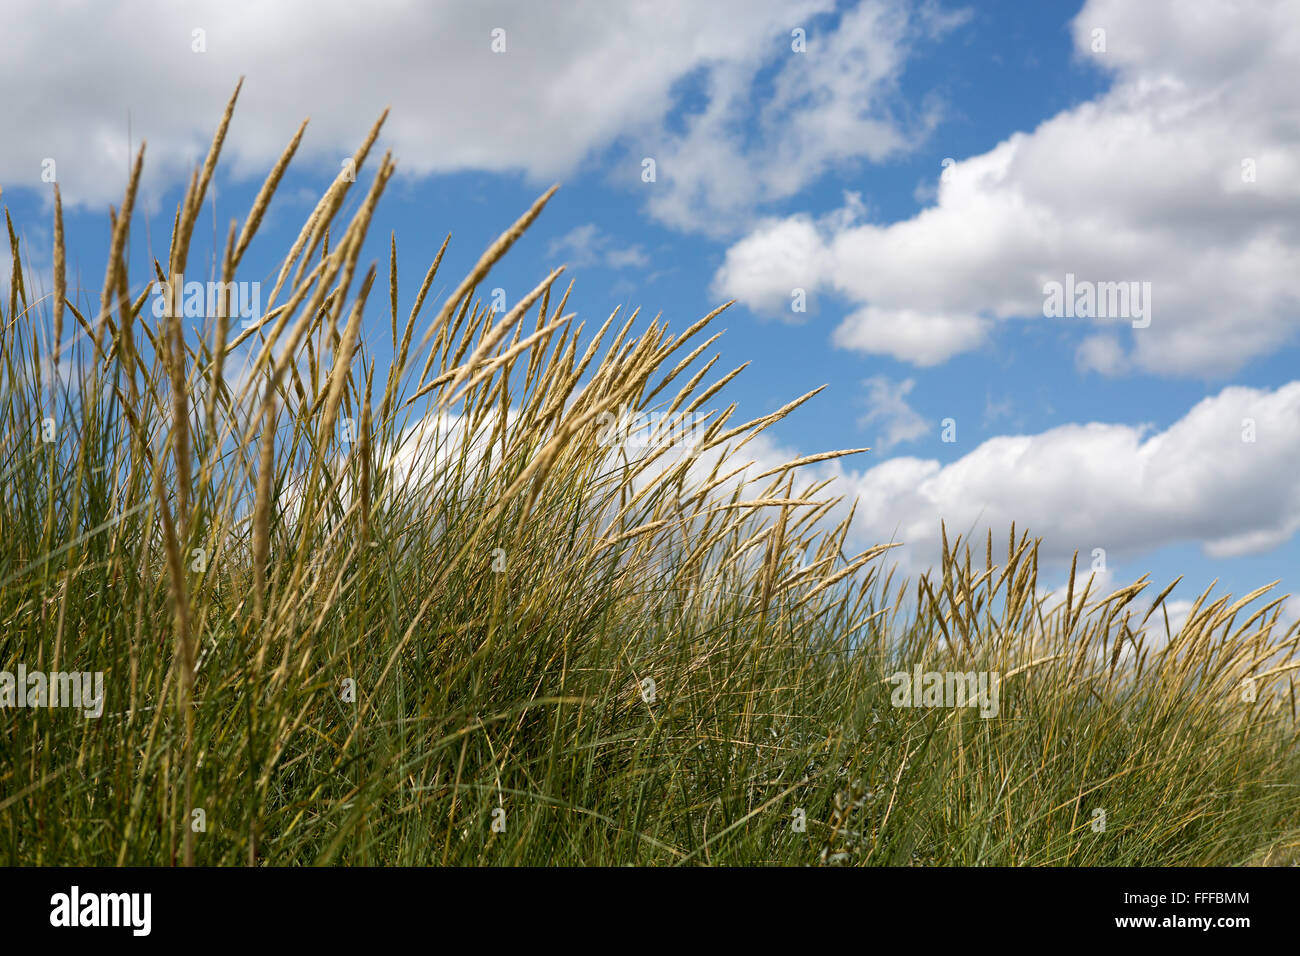 Nahaufnahme von Dune Grass gegen sonnigen blauen Himmel mit weißen Wolken an einem warmen Sommertag von der Nordsee, Mablethorpe Strand, Lincolnshire, England, Großbritannien Stockfoto